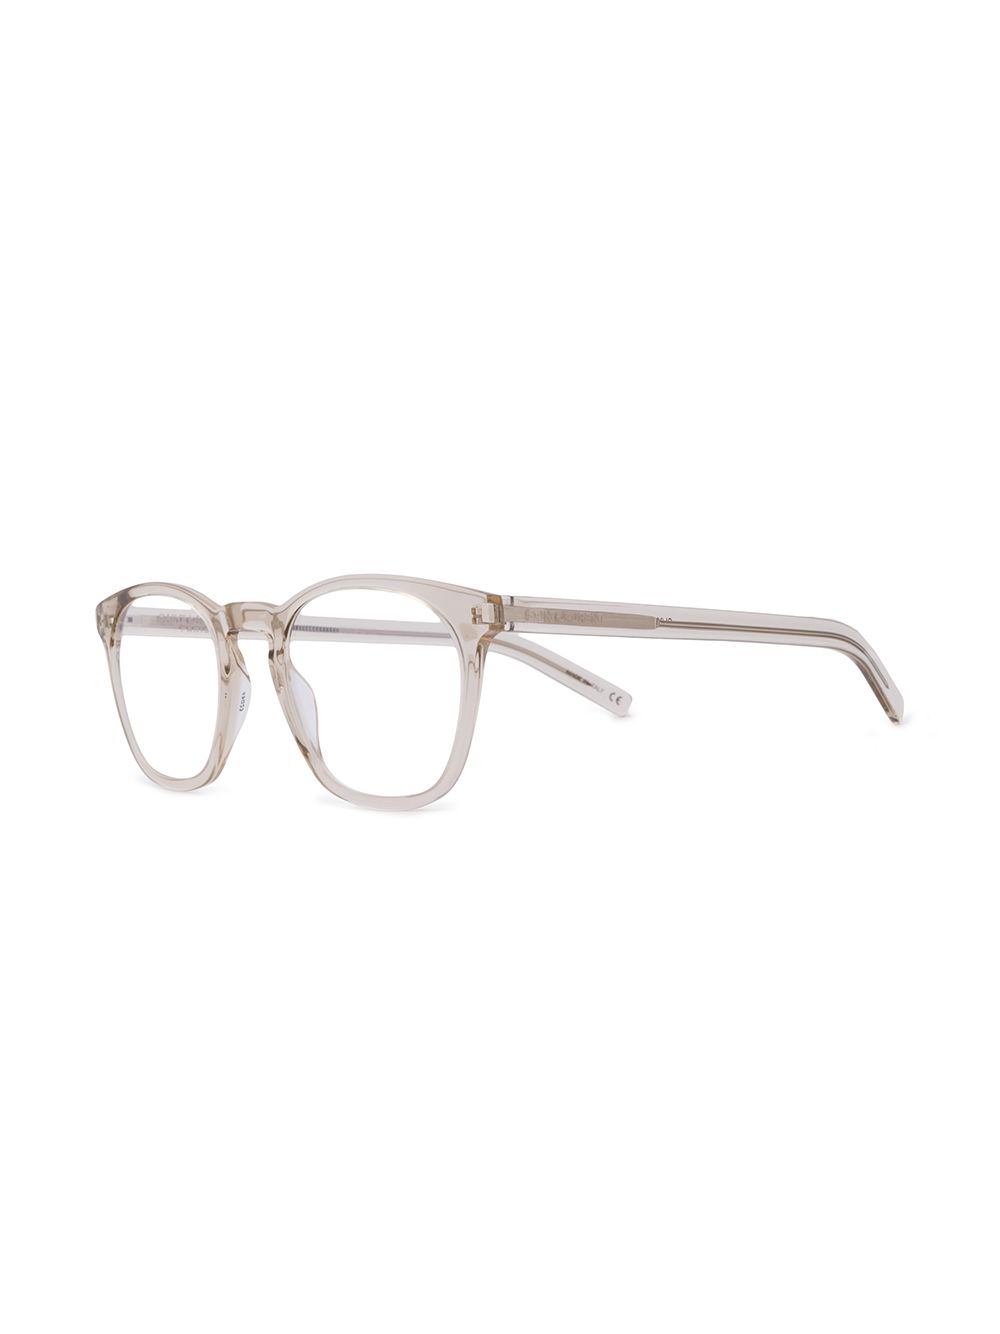 фото Saint laurent eyewear очки в роговой оправе